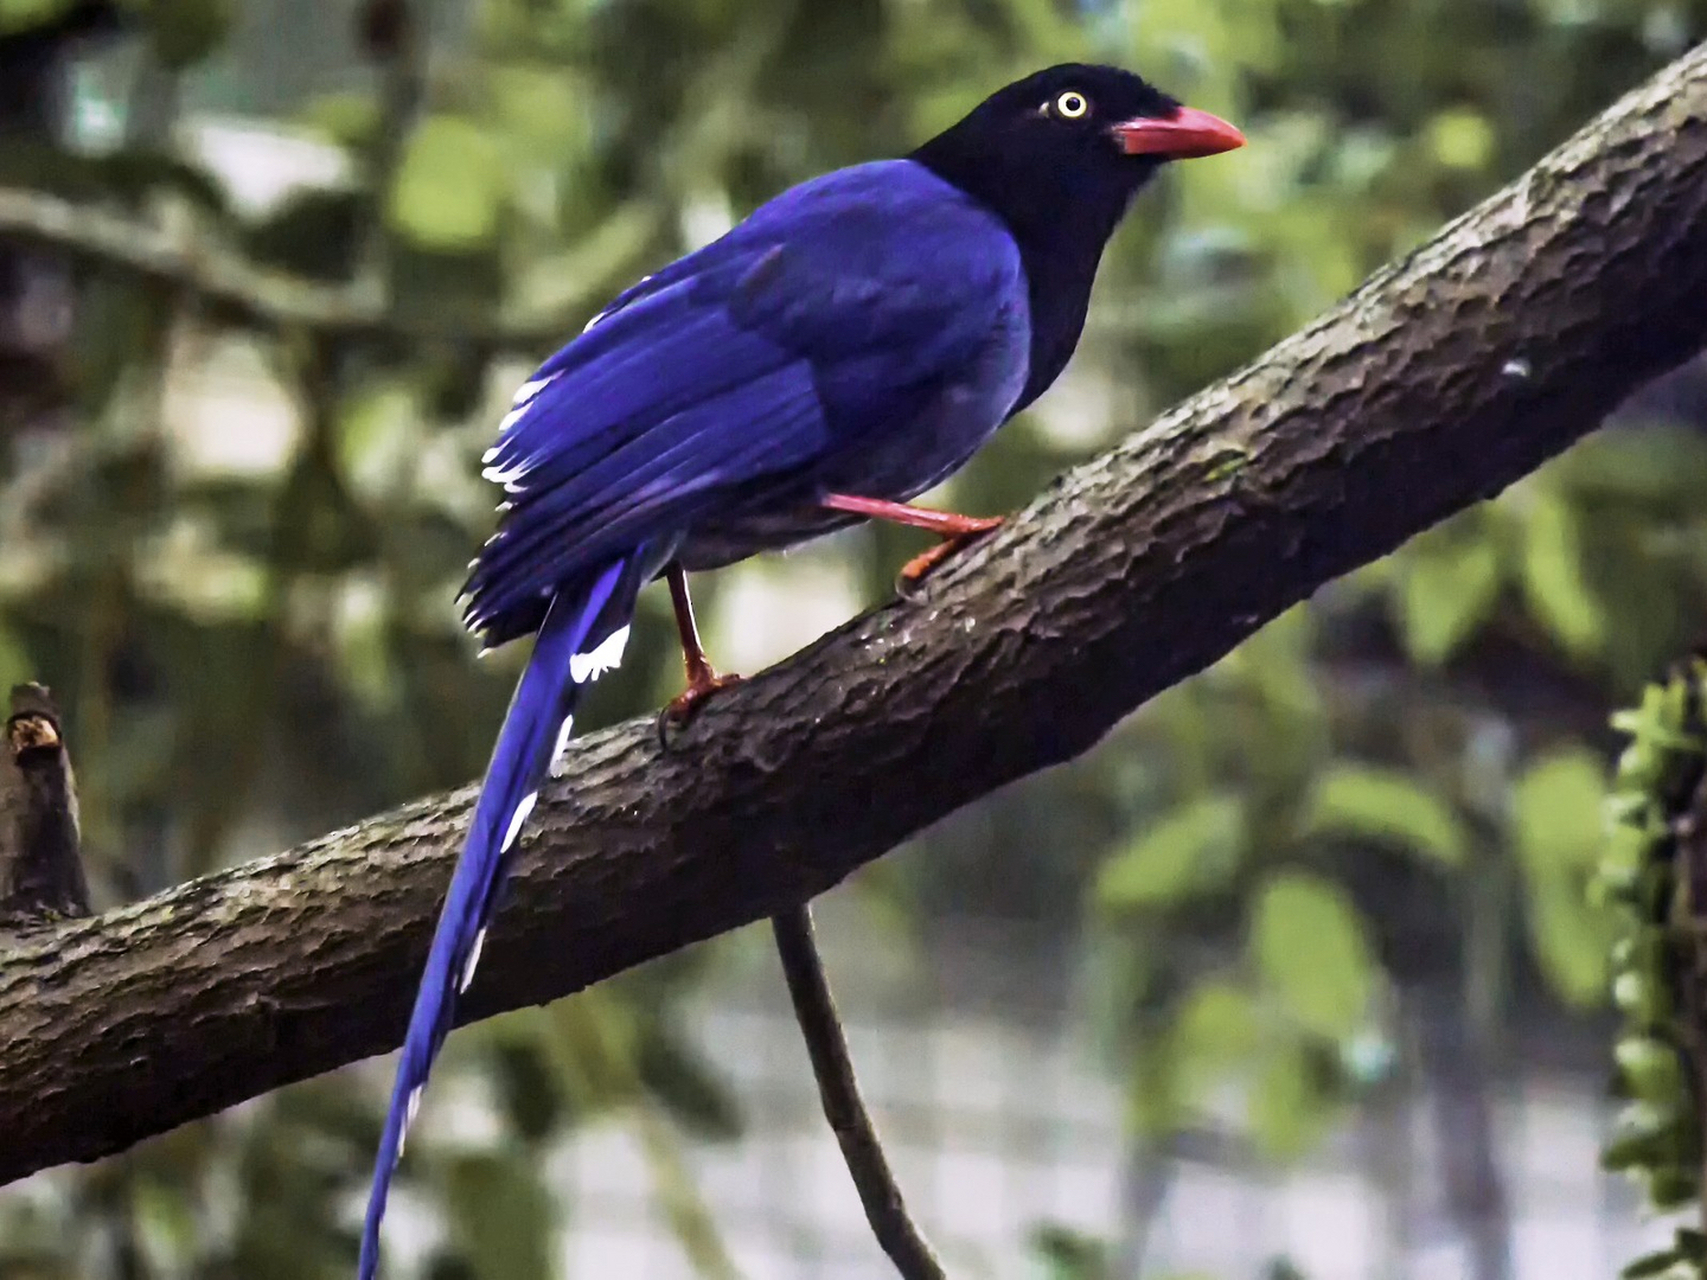 台湾蓝鹊,又叫长尾山娘,是一种体型较大的深蓝色鸟类